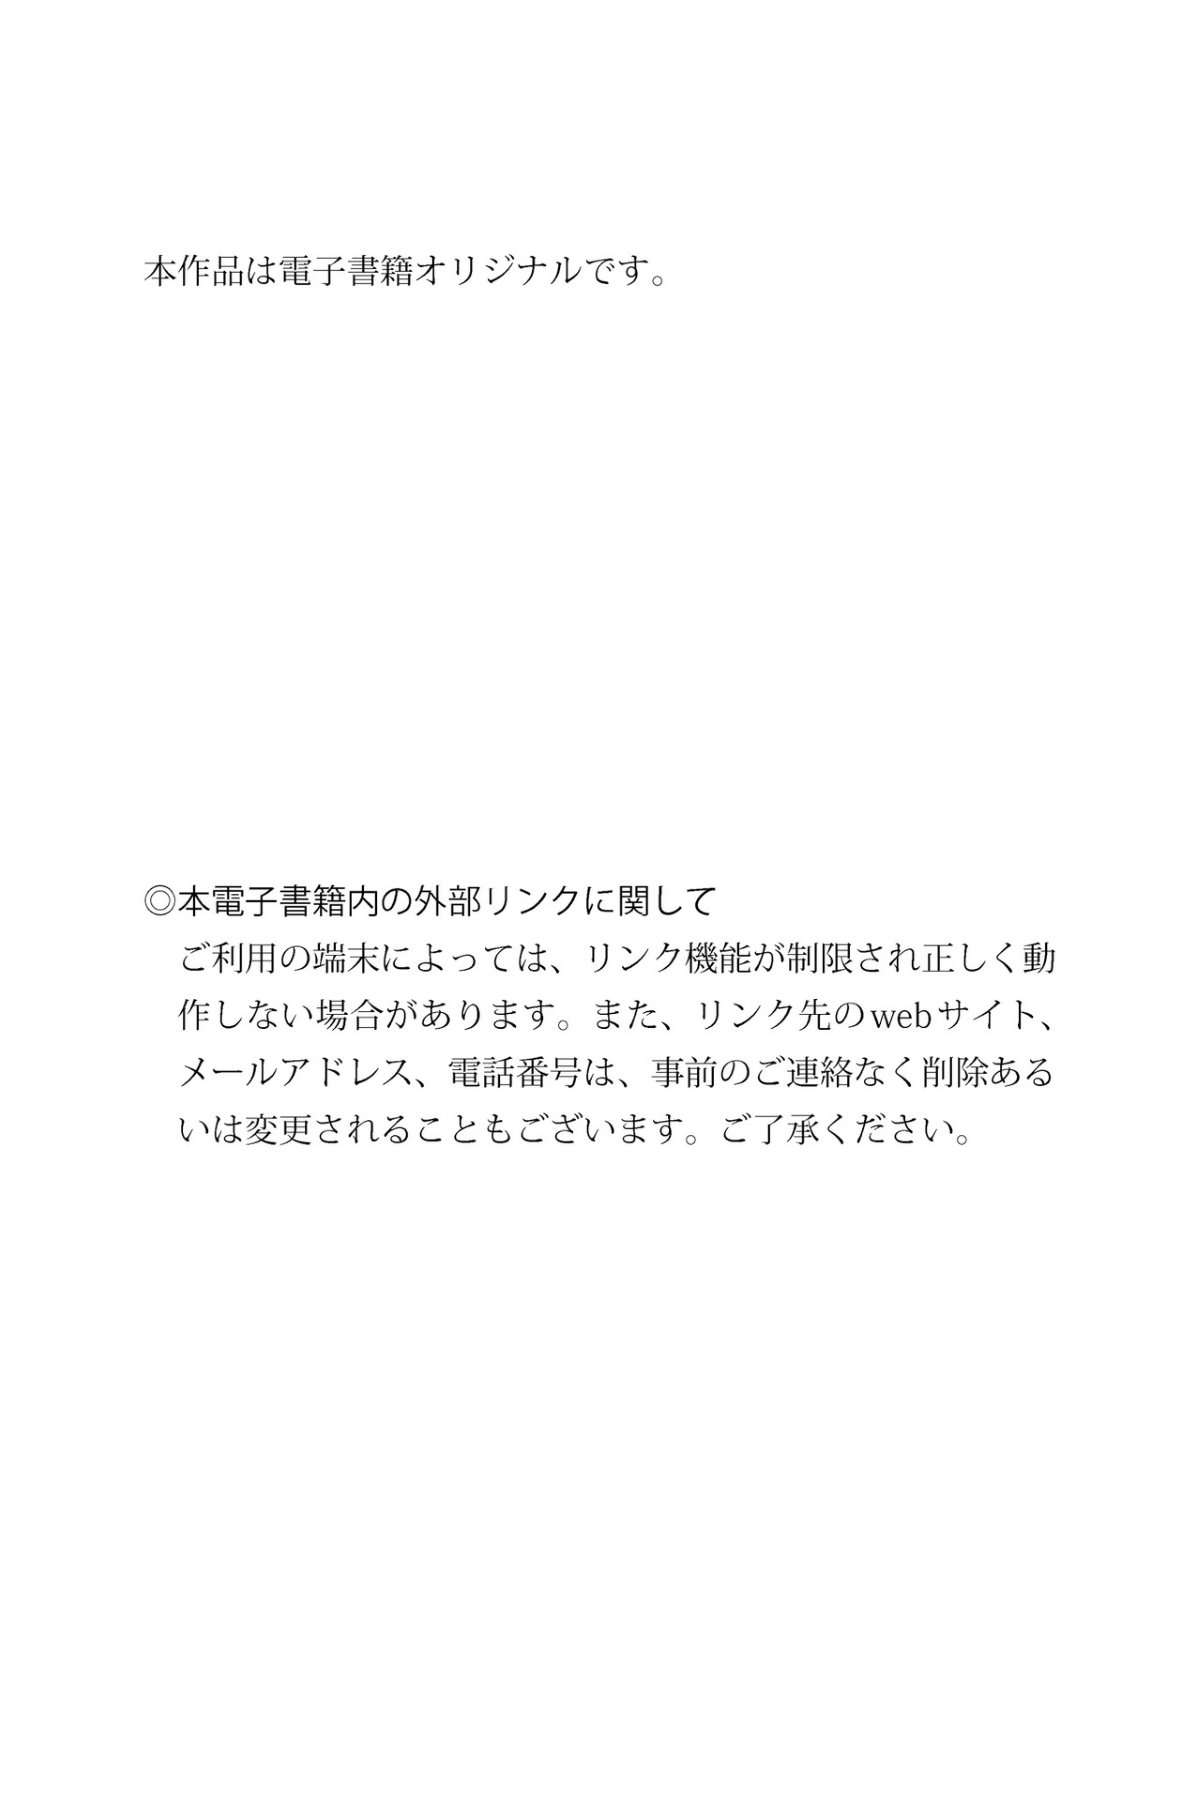 FRIDAY Digital Photobook Konan Koyoi 小宵こなん Marshmallow H Cup Vol 1 ましゅまろＨカップ Vol 1 2022 06 10 0049 3273961792.jpg